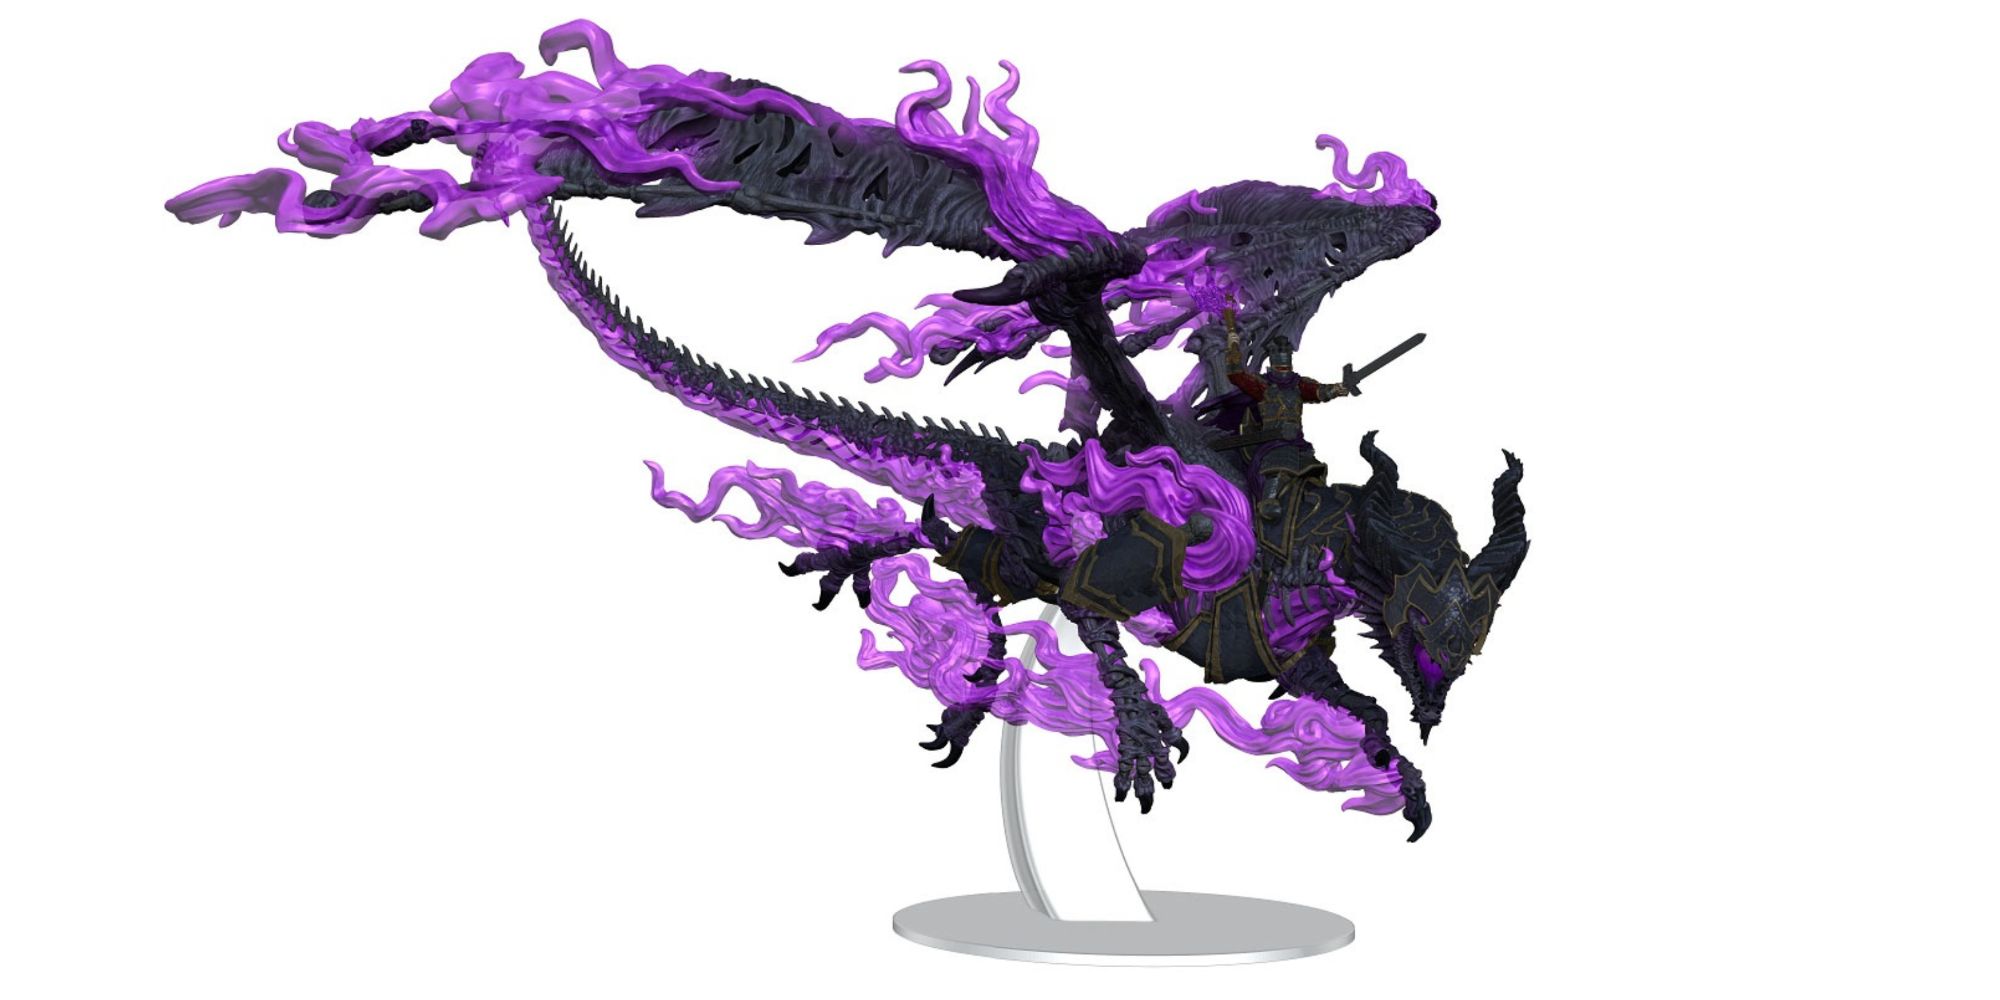 Huge D&D Mini Features Iconic Dragon-Riding Villain